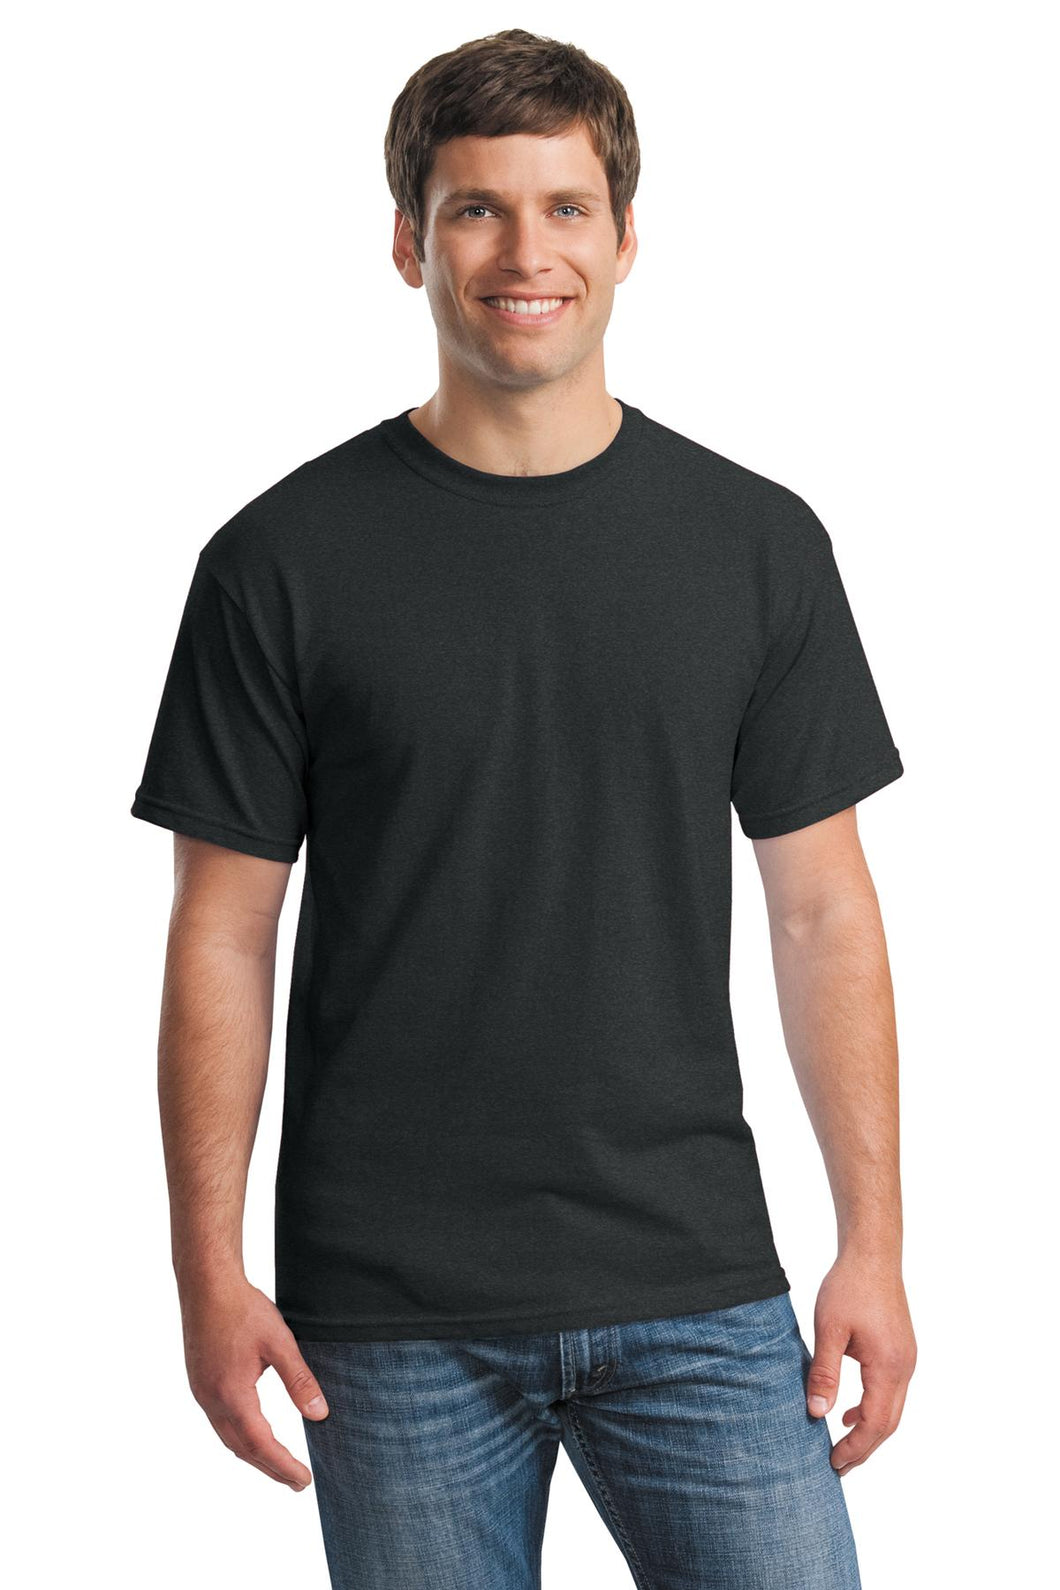 Wholesale Gildan 5000 Men's 100% Heavy Cotton T-Shirt